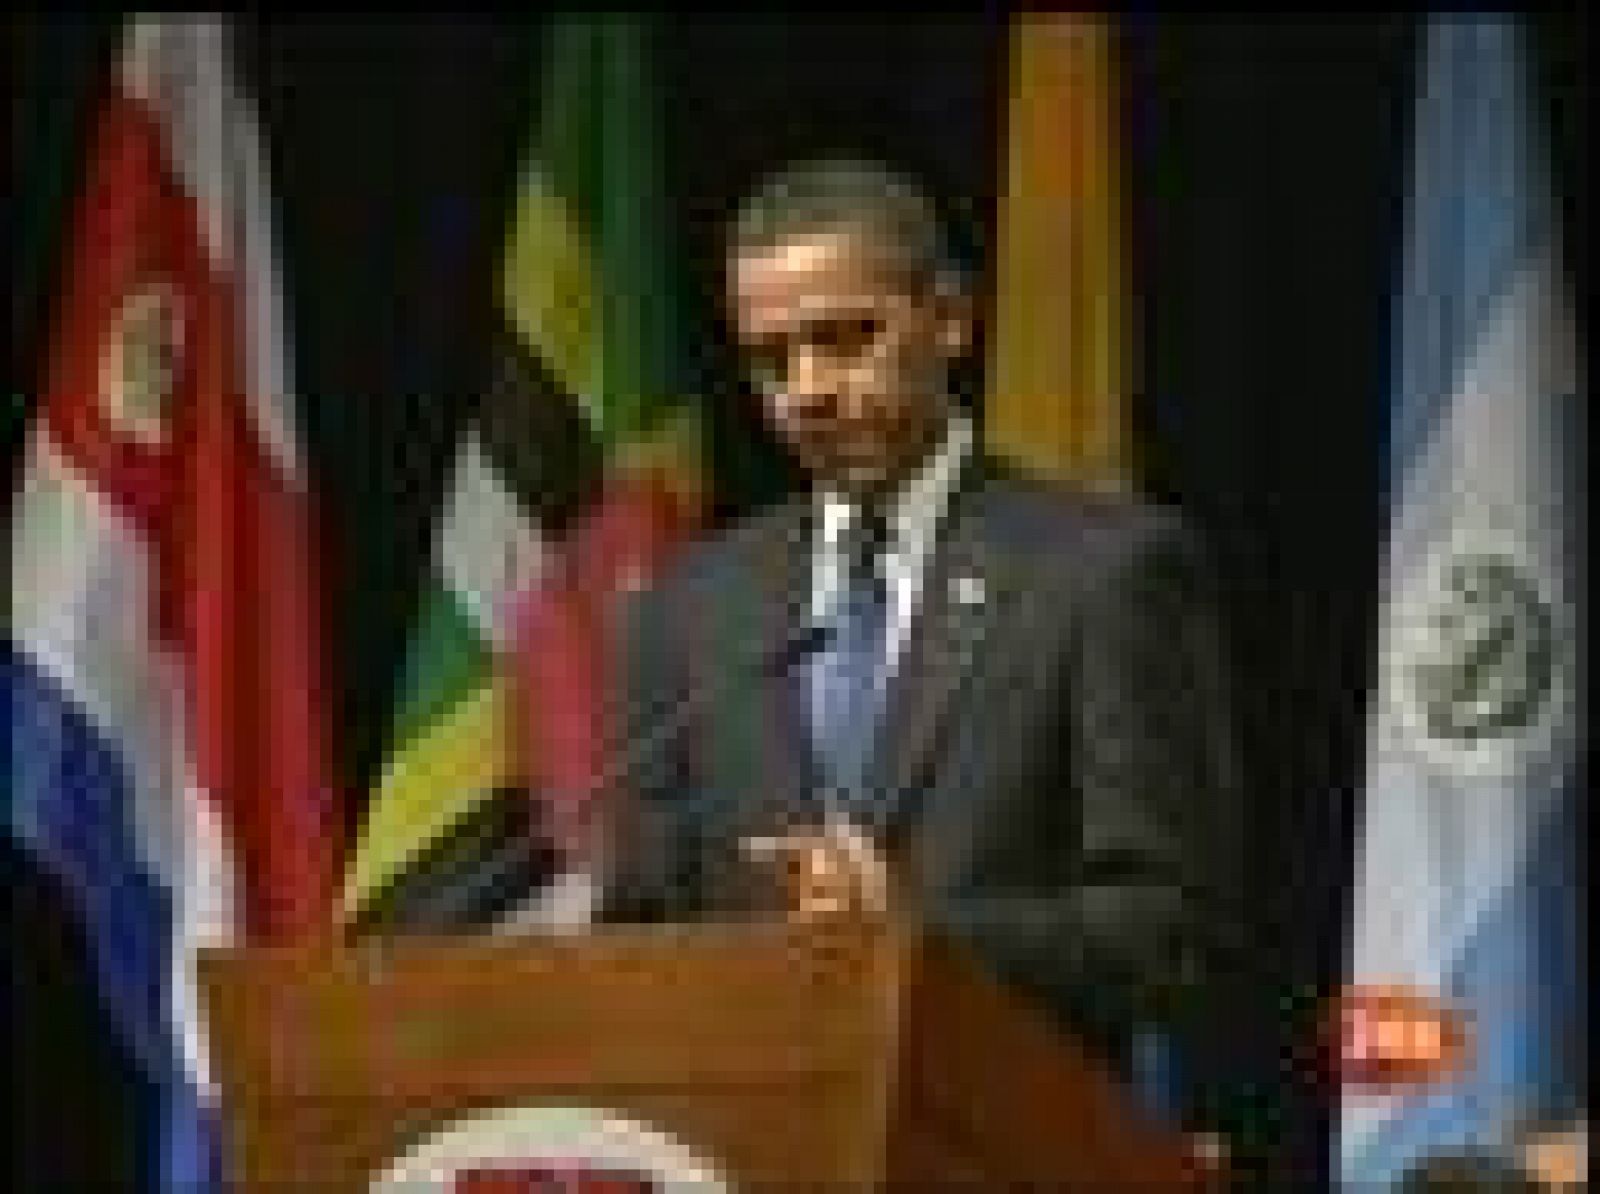 El presidente de EE.UU, Barack Obama, ha puesto de manifiesto su intención de iniciar una nueva relación con Cuba, con cuyo Gobierno está dispuesto a hablar de derechos humanos, inmigración y economía, entre otros temas. 